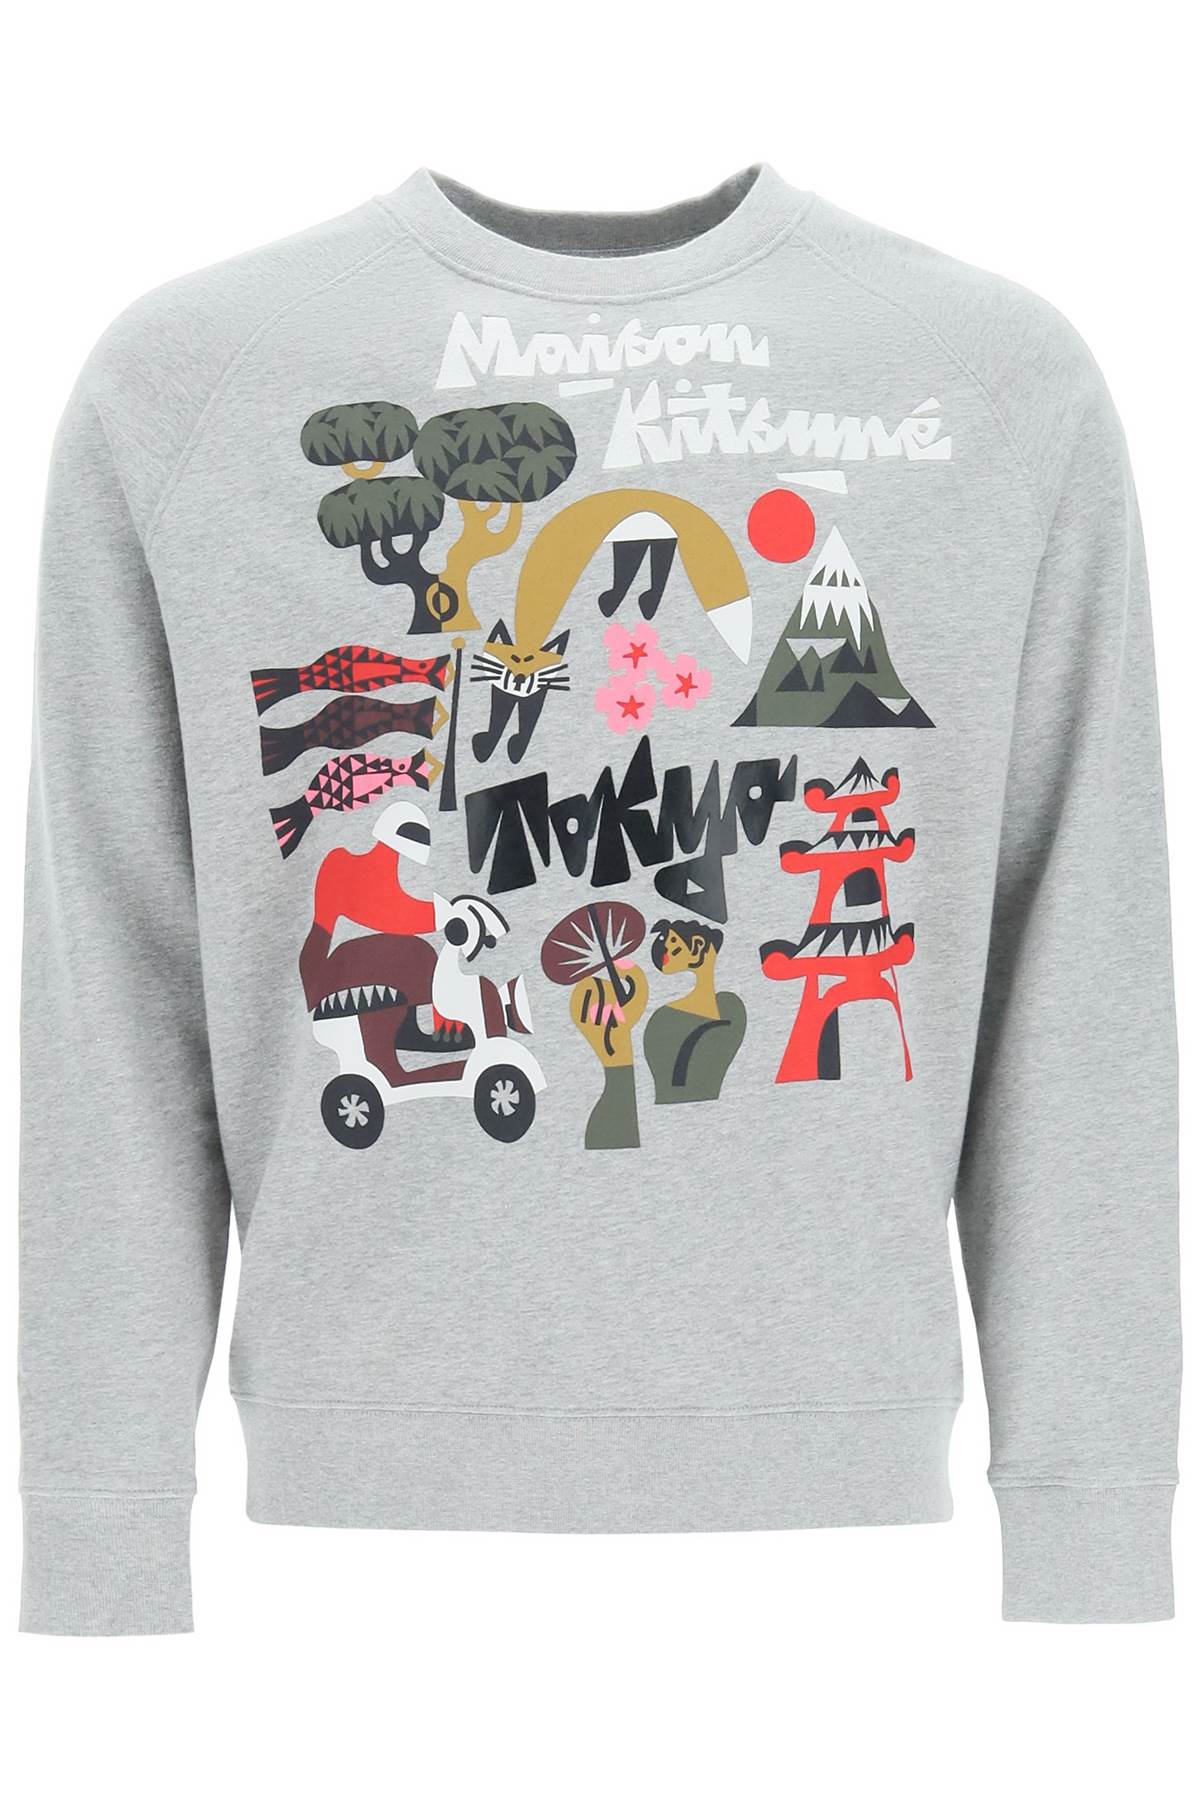 Maison Kitsuné tokyo Print Sweatshirt X Bill Rebholz